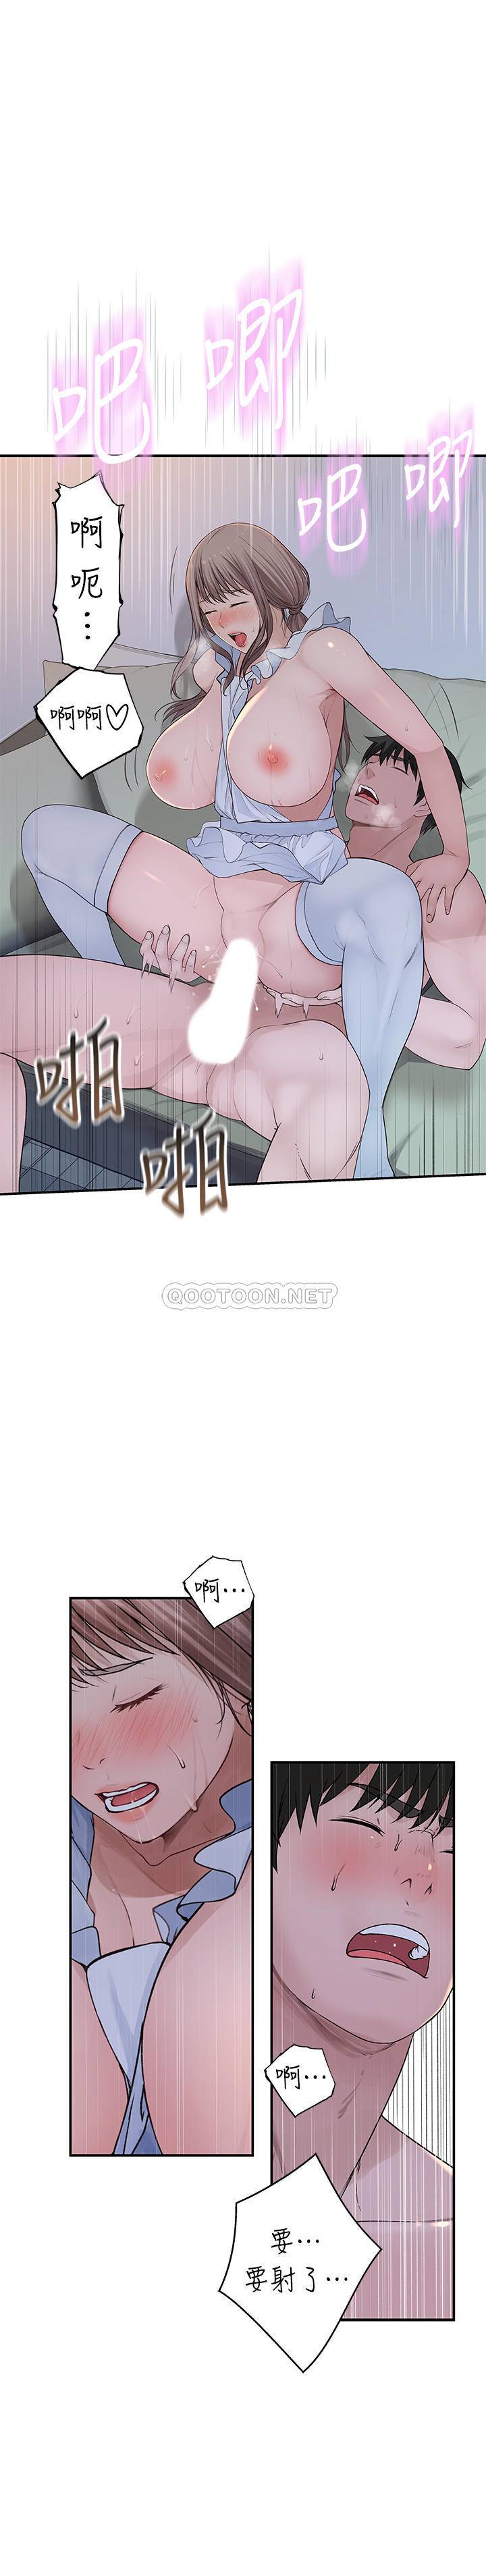 韩国污漫画 我們的非常關系 第44话-纯欣的内衣照传遍网路 14